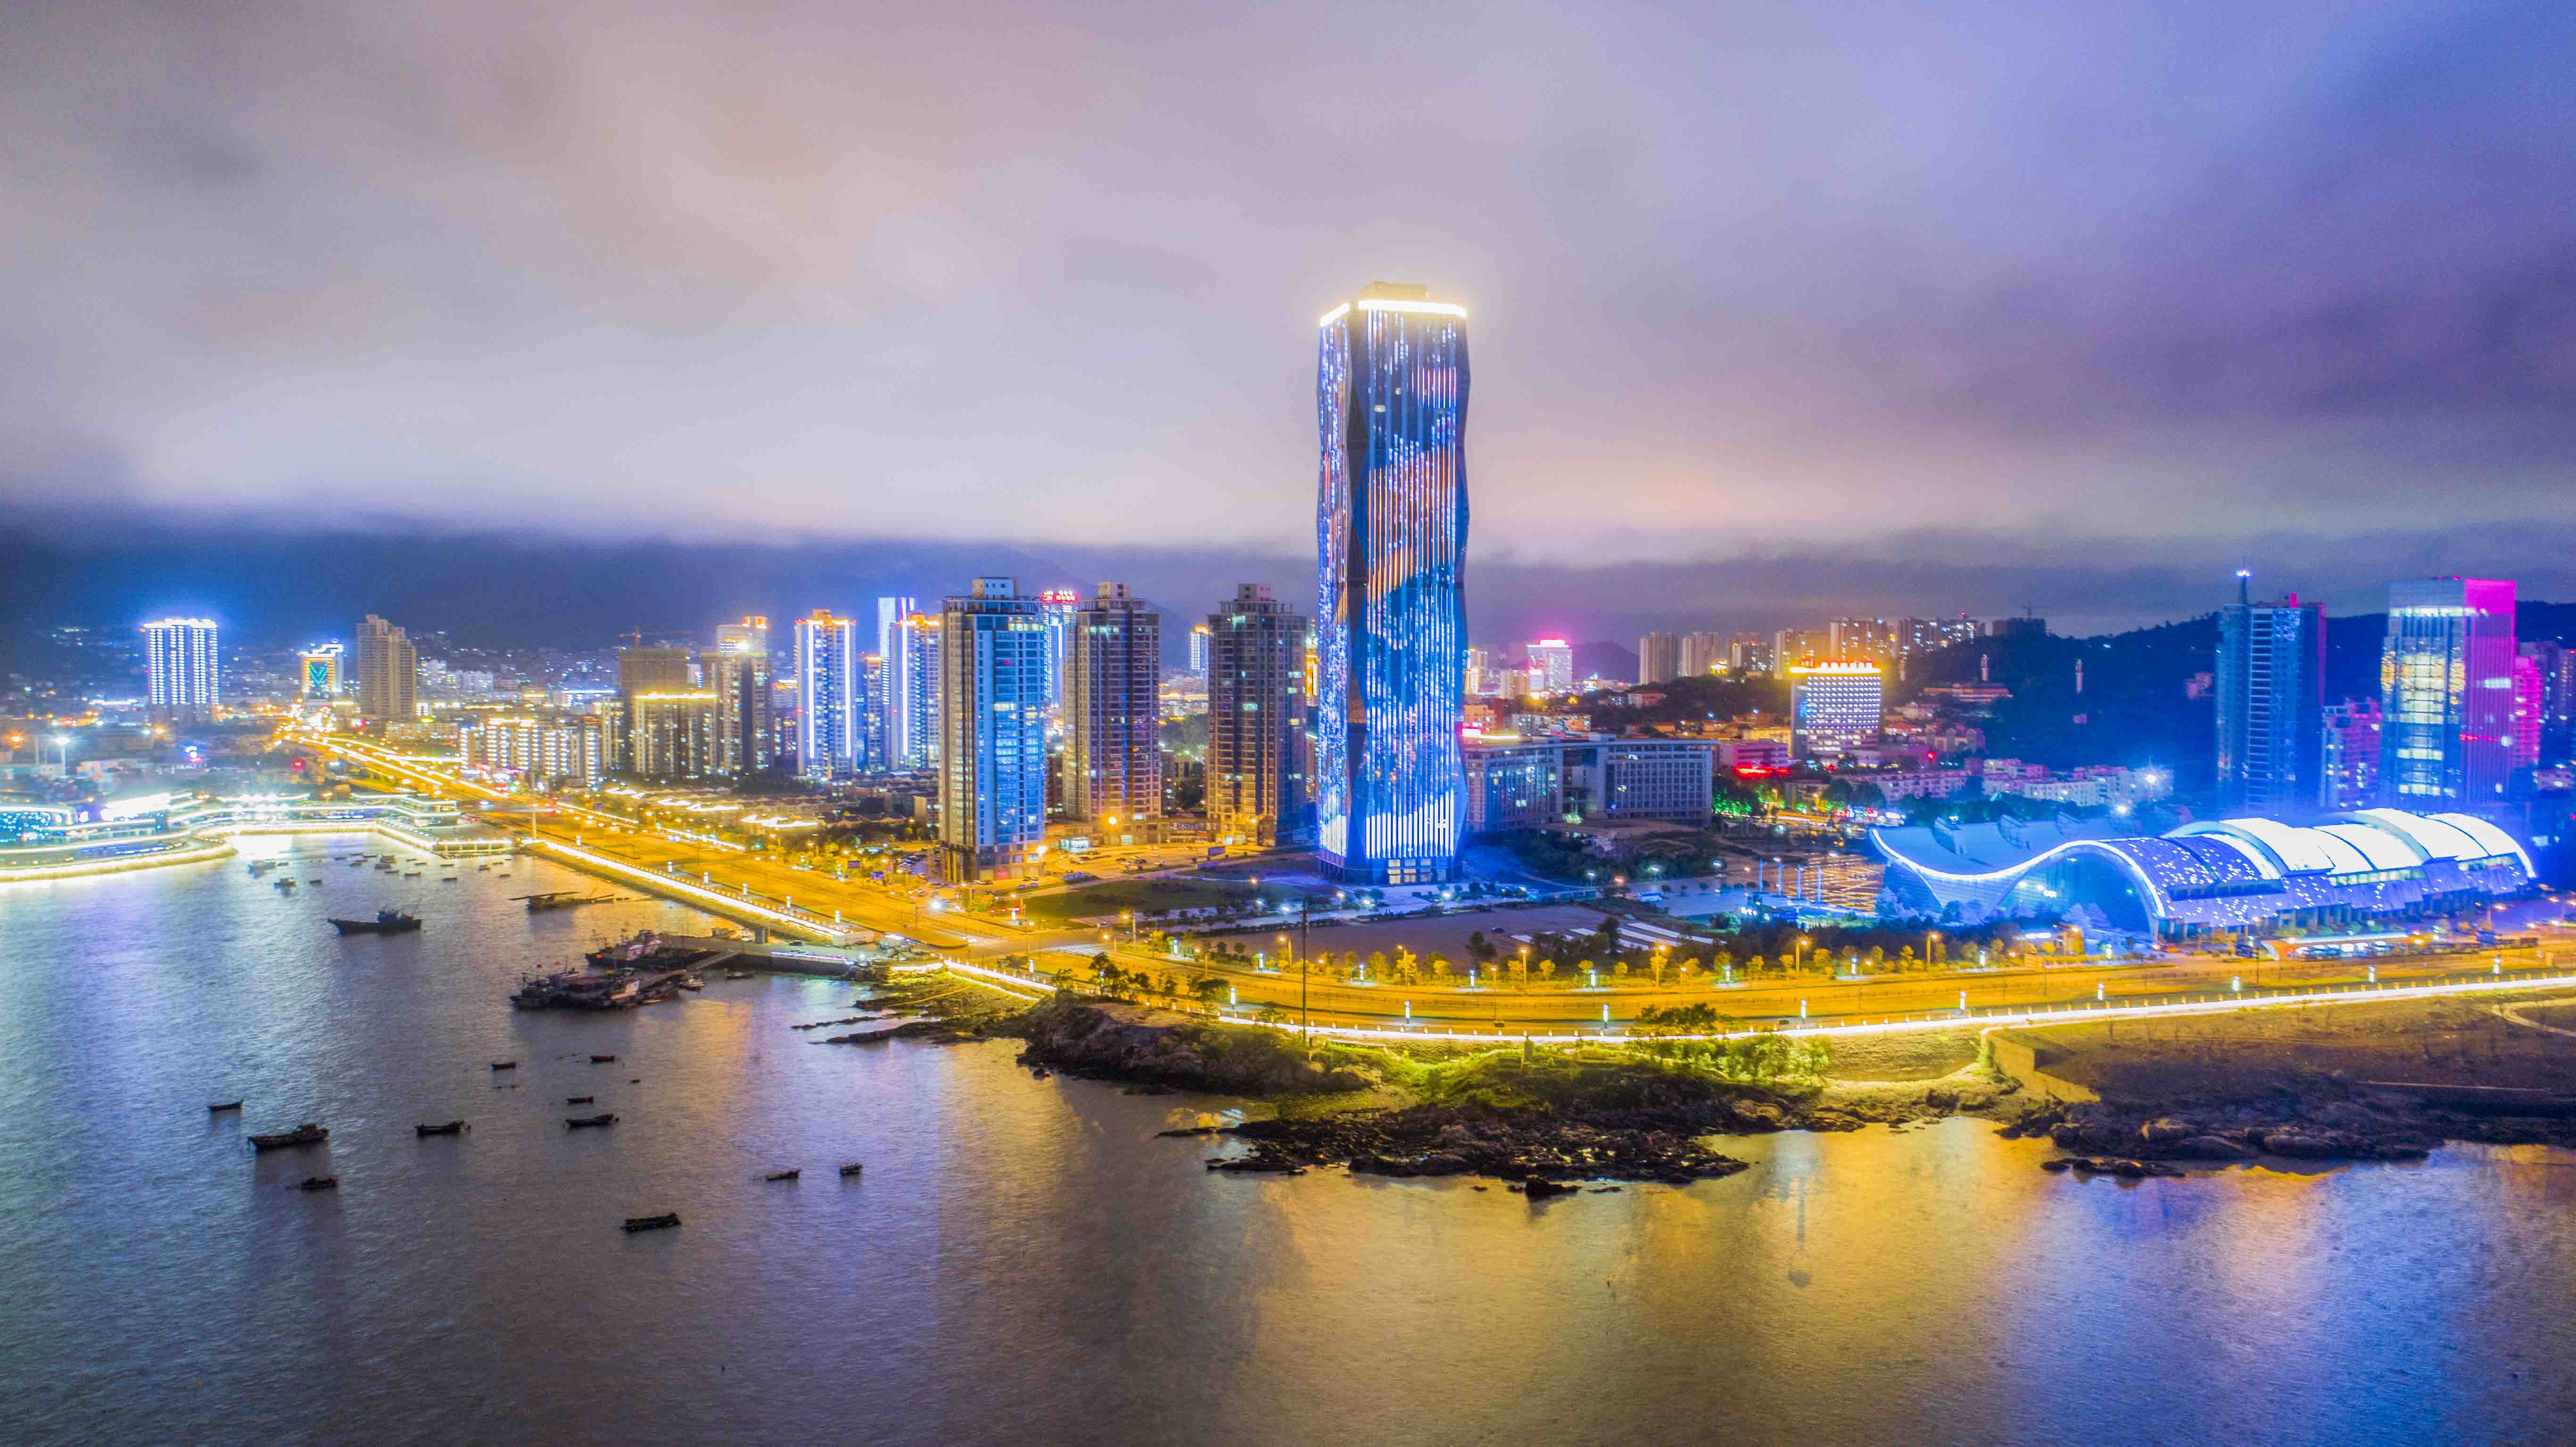 连云港连云区国展中心片区夜景照明设备项目工程2021神灯奖申报工程